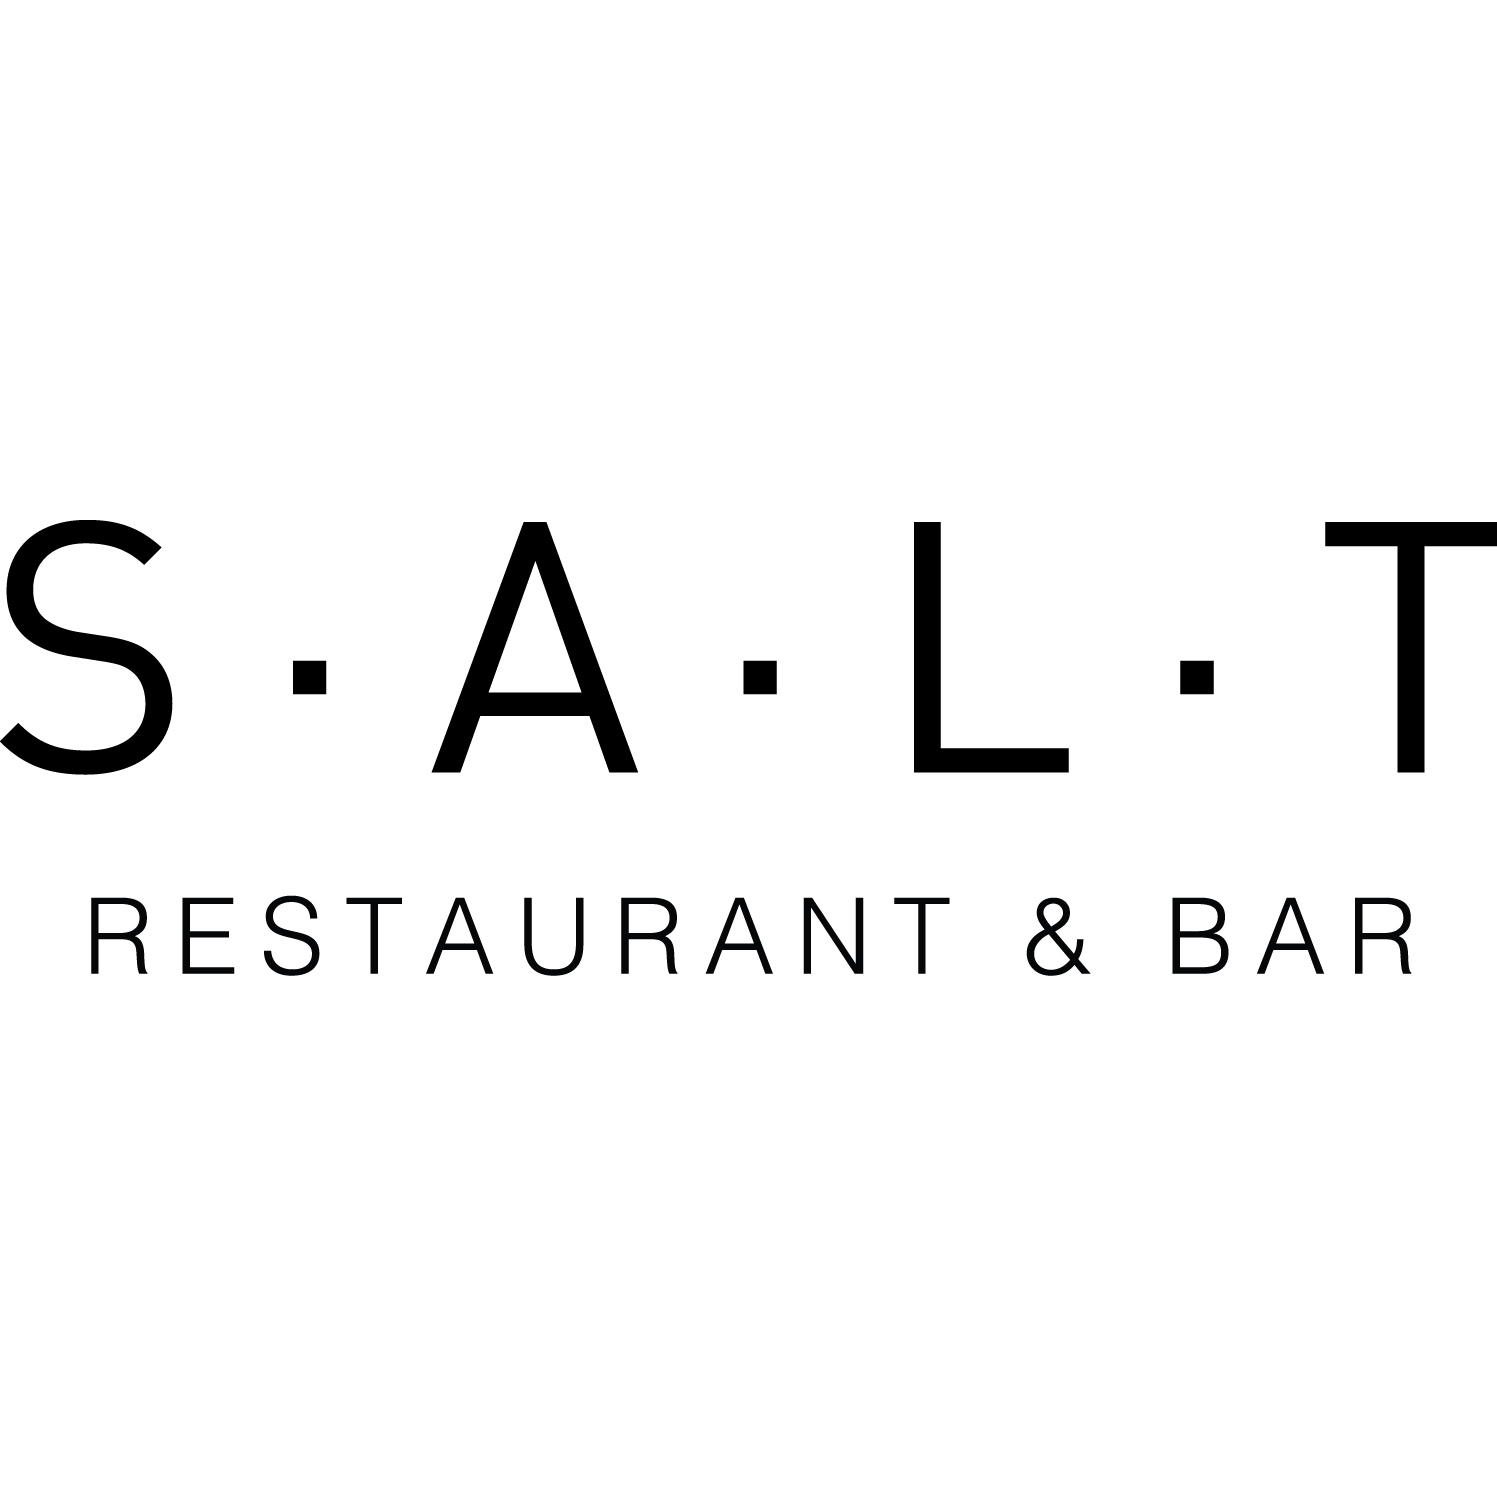 SALT Restaurant & Bar Marina del Rey (424)289-8223